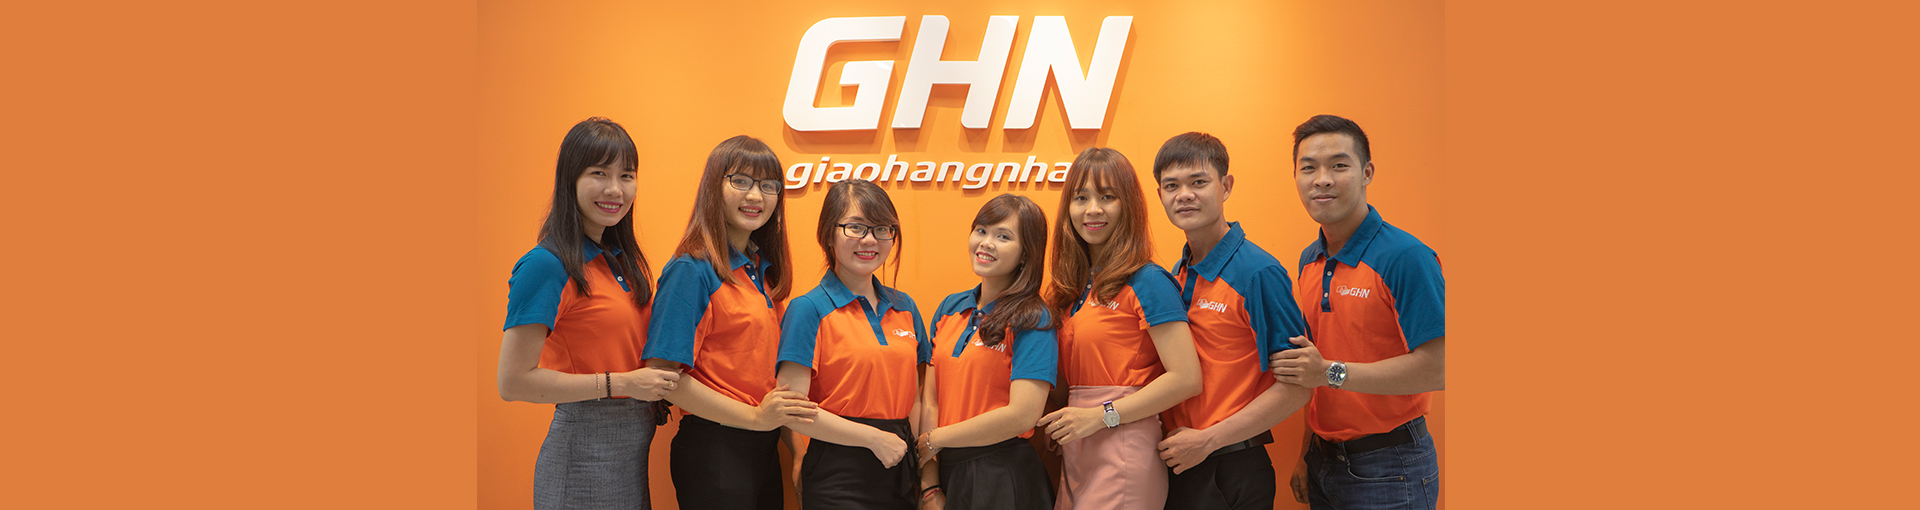 
                                                            Open jobs at GHN
                                                    